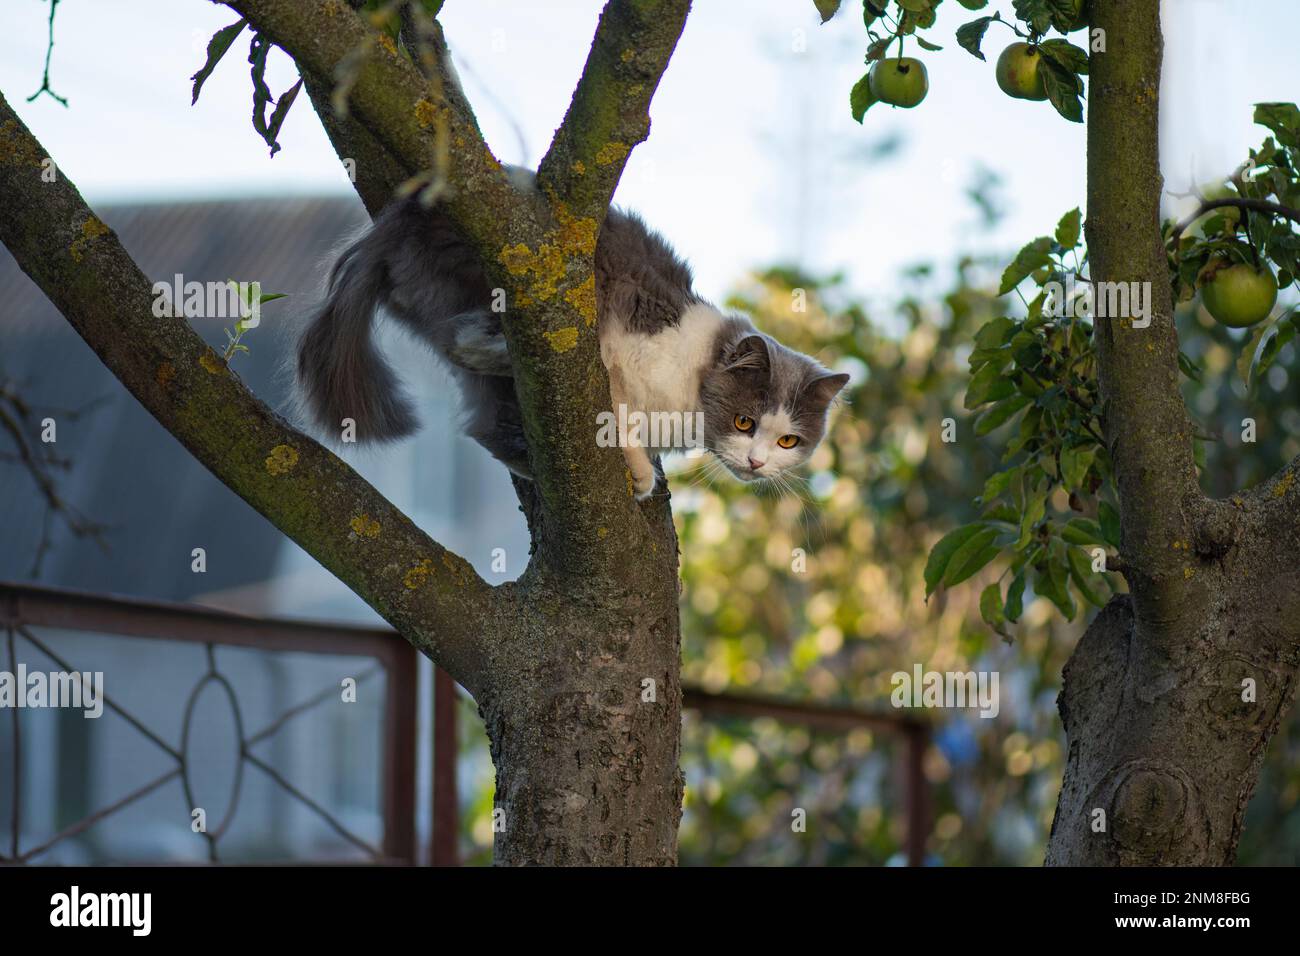 Schlaue, geschickte Katze, die auf einen Baum klettert und vom Baum herunterkommt. Katze auf dem Baum auf natürlichem Hintergrund. Stockfoto